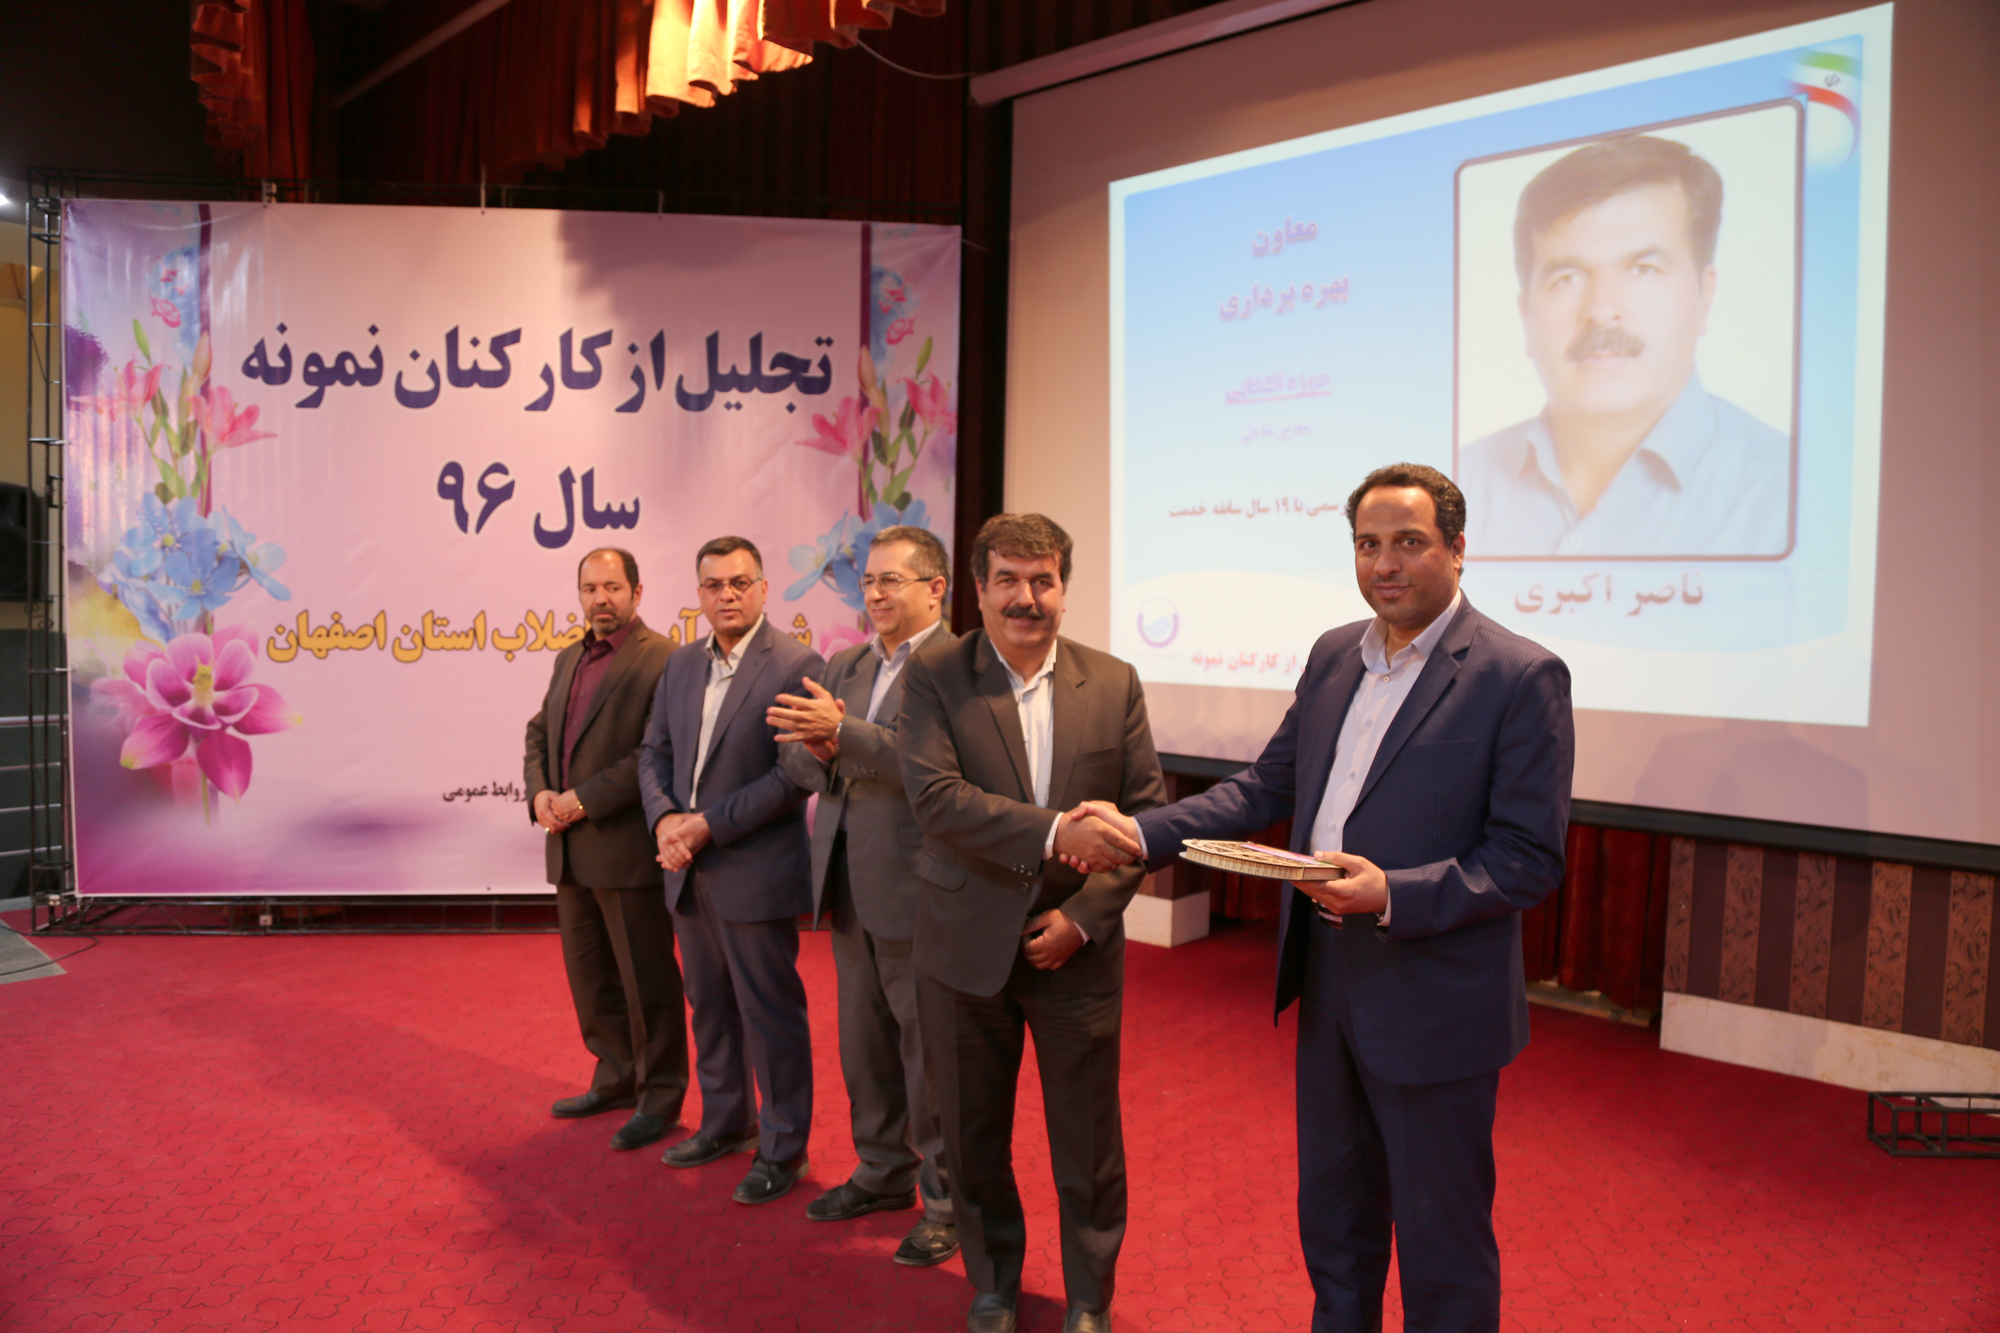 مدیرعامل شرکت آبفا استان اصفهان در مراسم تجلیل از کارکنان نمونه عنوان کرد:  کارکنان باید در صدد انجام فعالیت های ماندگار و اثرگذار باشند